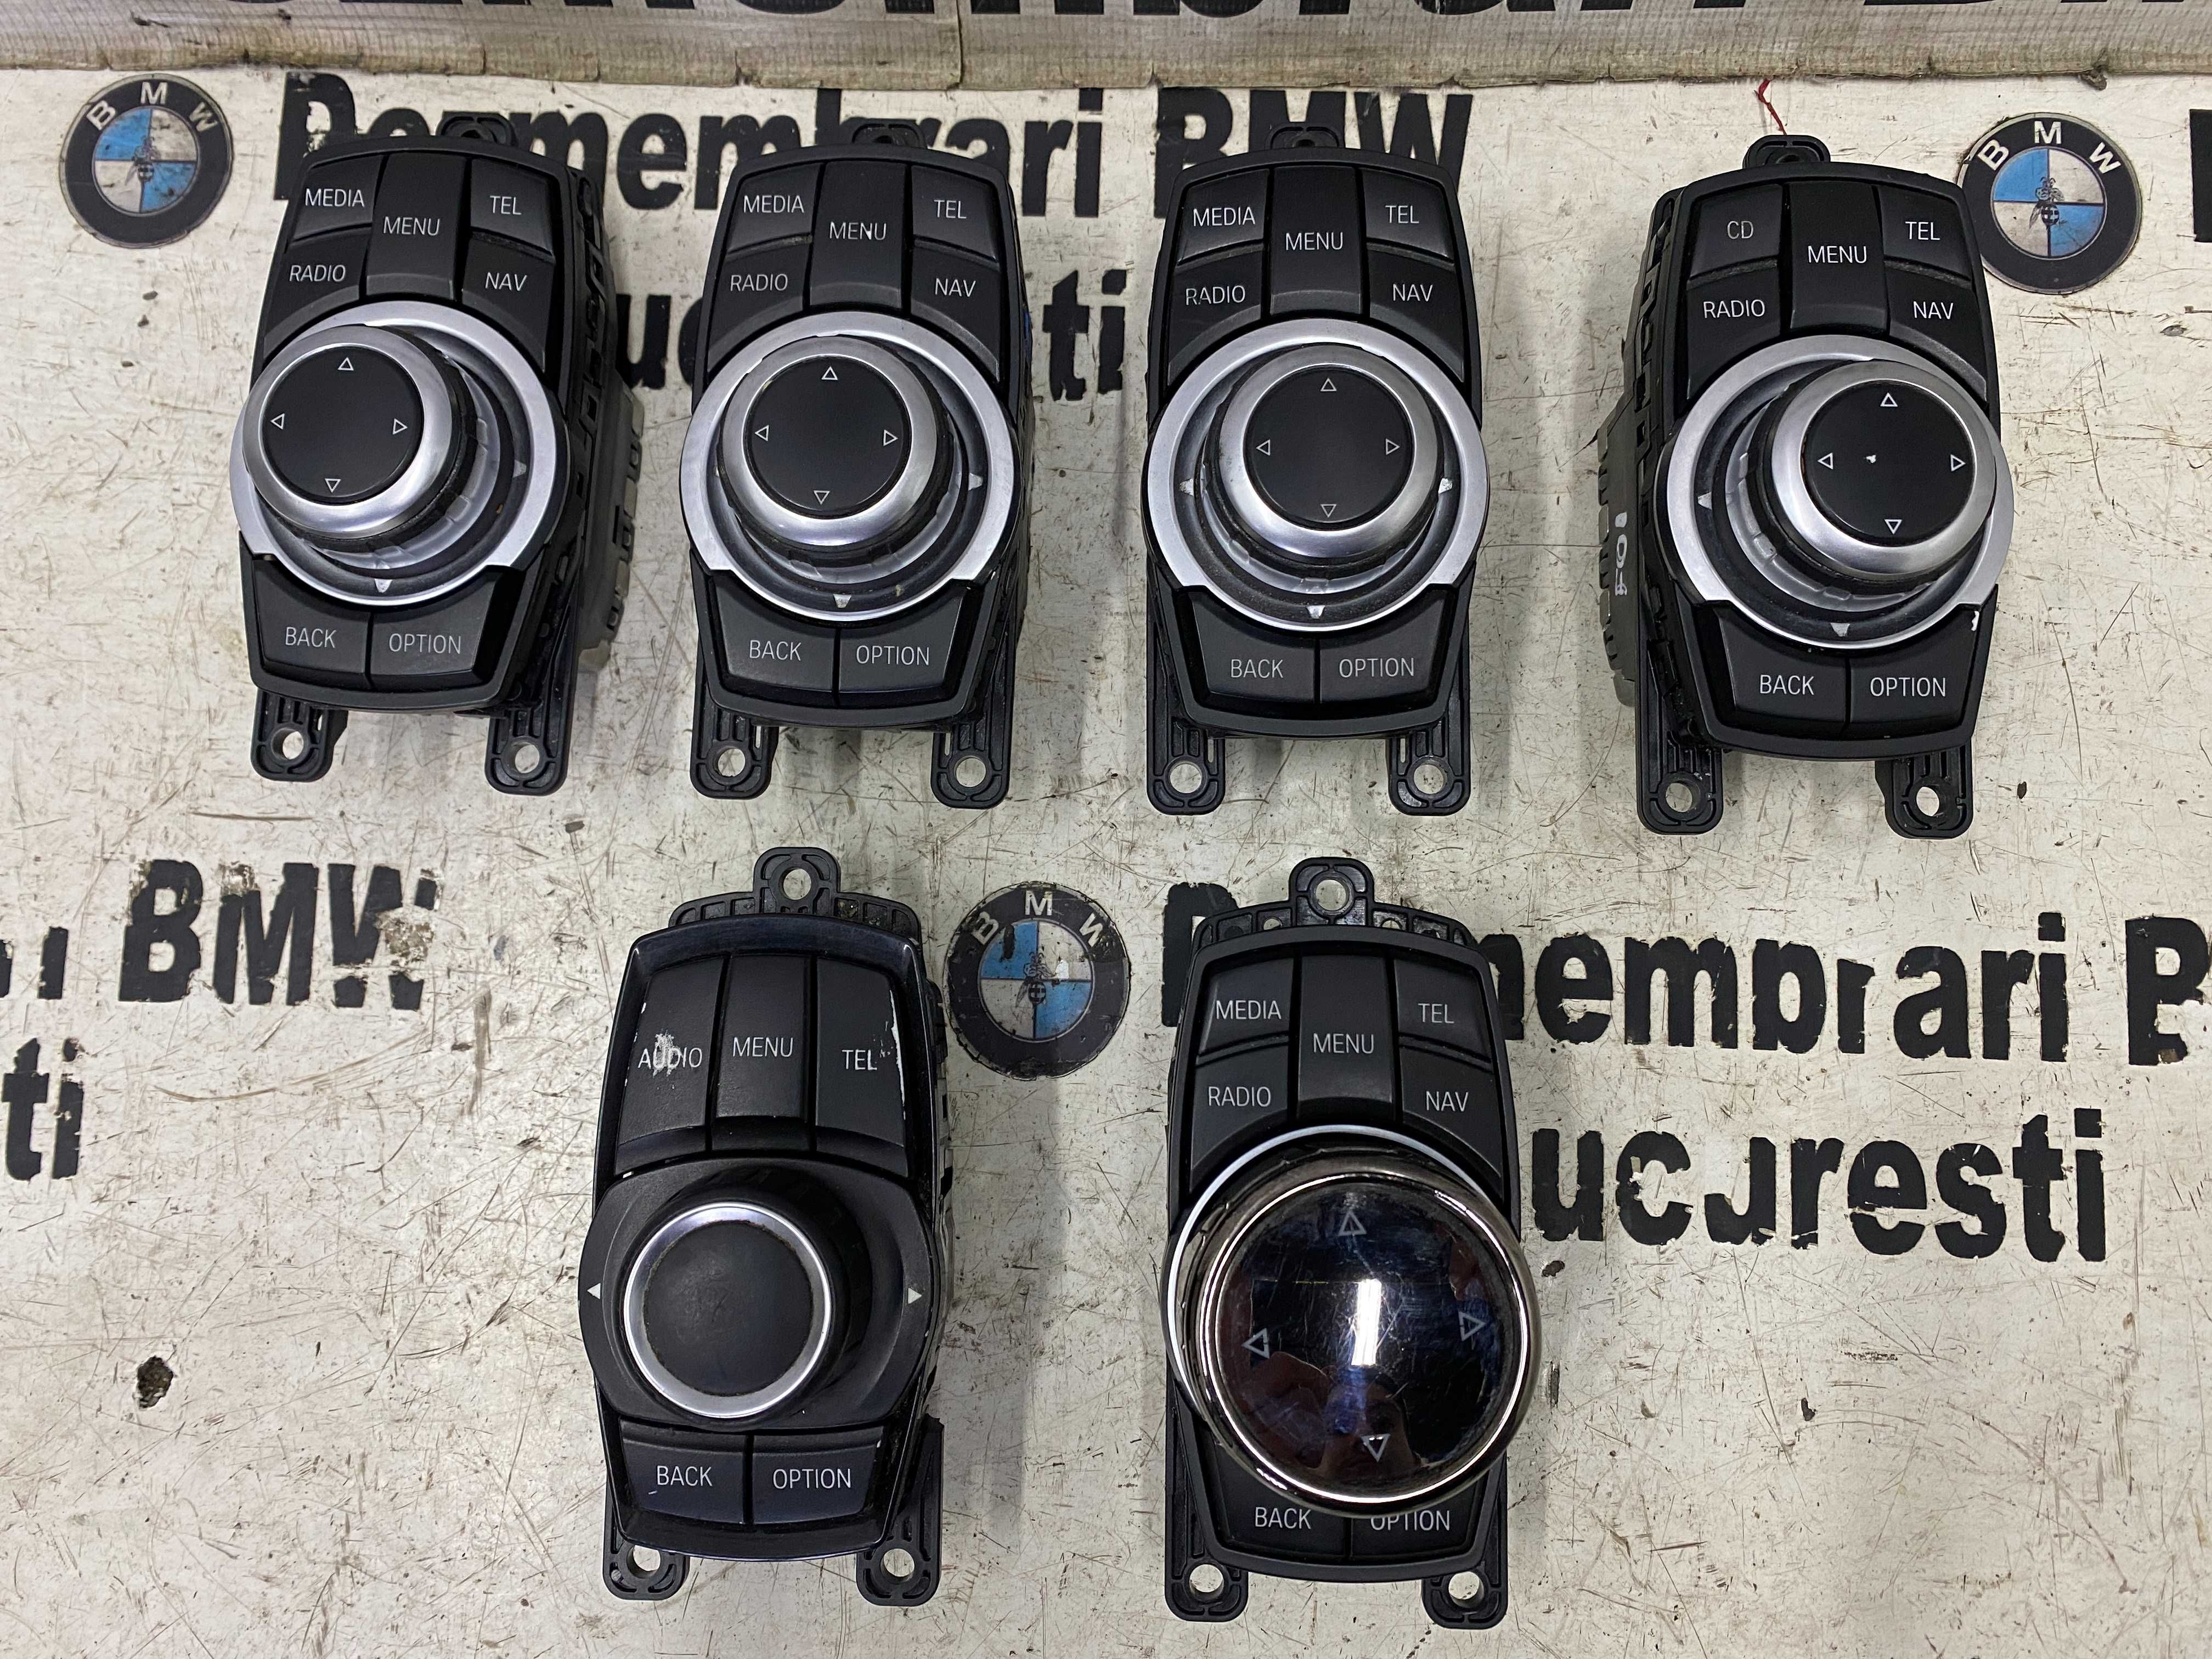 Joystick navigatie BMW F20,F22,F30,F32,F34,F36,F10,F11,F06,F01,X1,X3